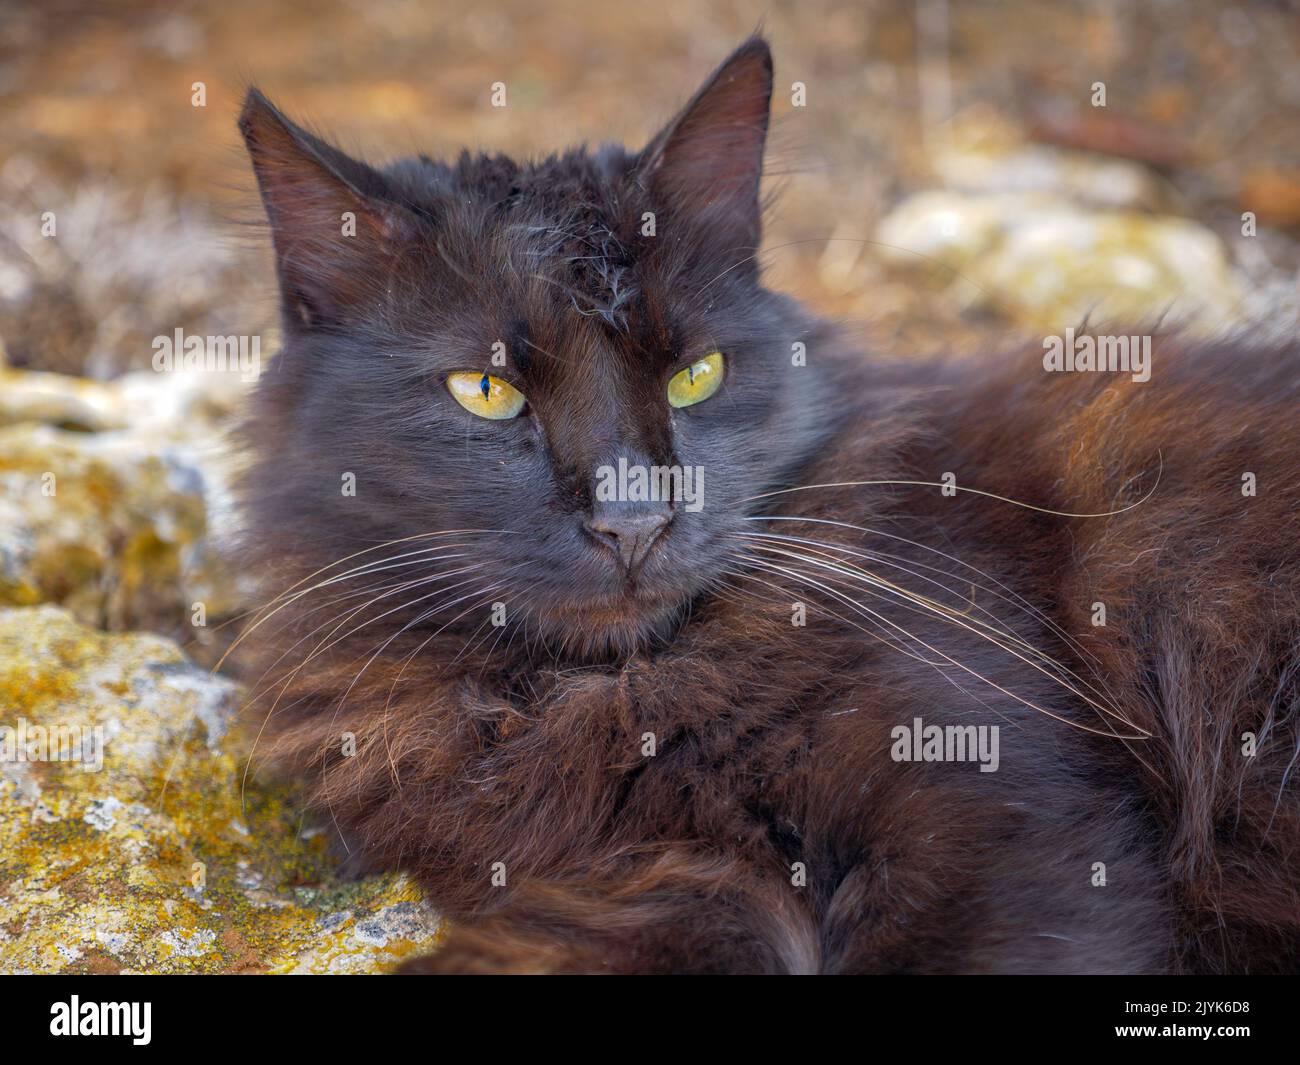 Die ungestammte, gestromte schwarze und braune flauschige langhaarige Katze mit schönen grünen Augen und langen Schnurrhaaren liegt ruhig auf moosigem Felsen nahe dem Mittelmeer Stockfoto